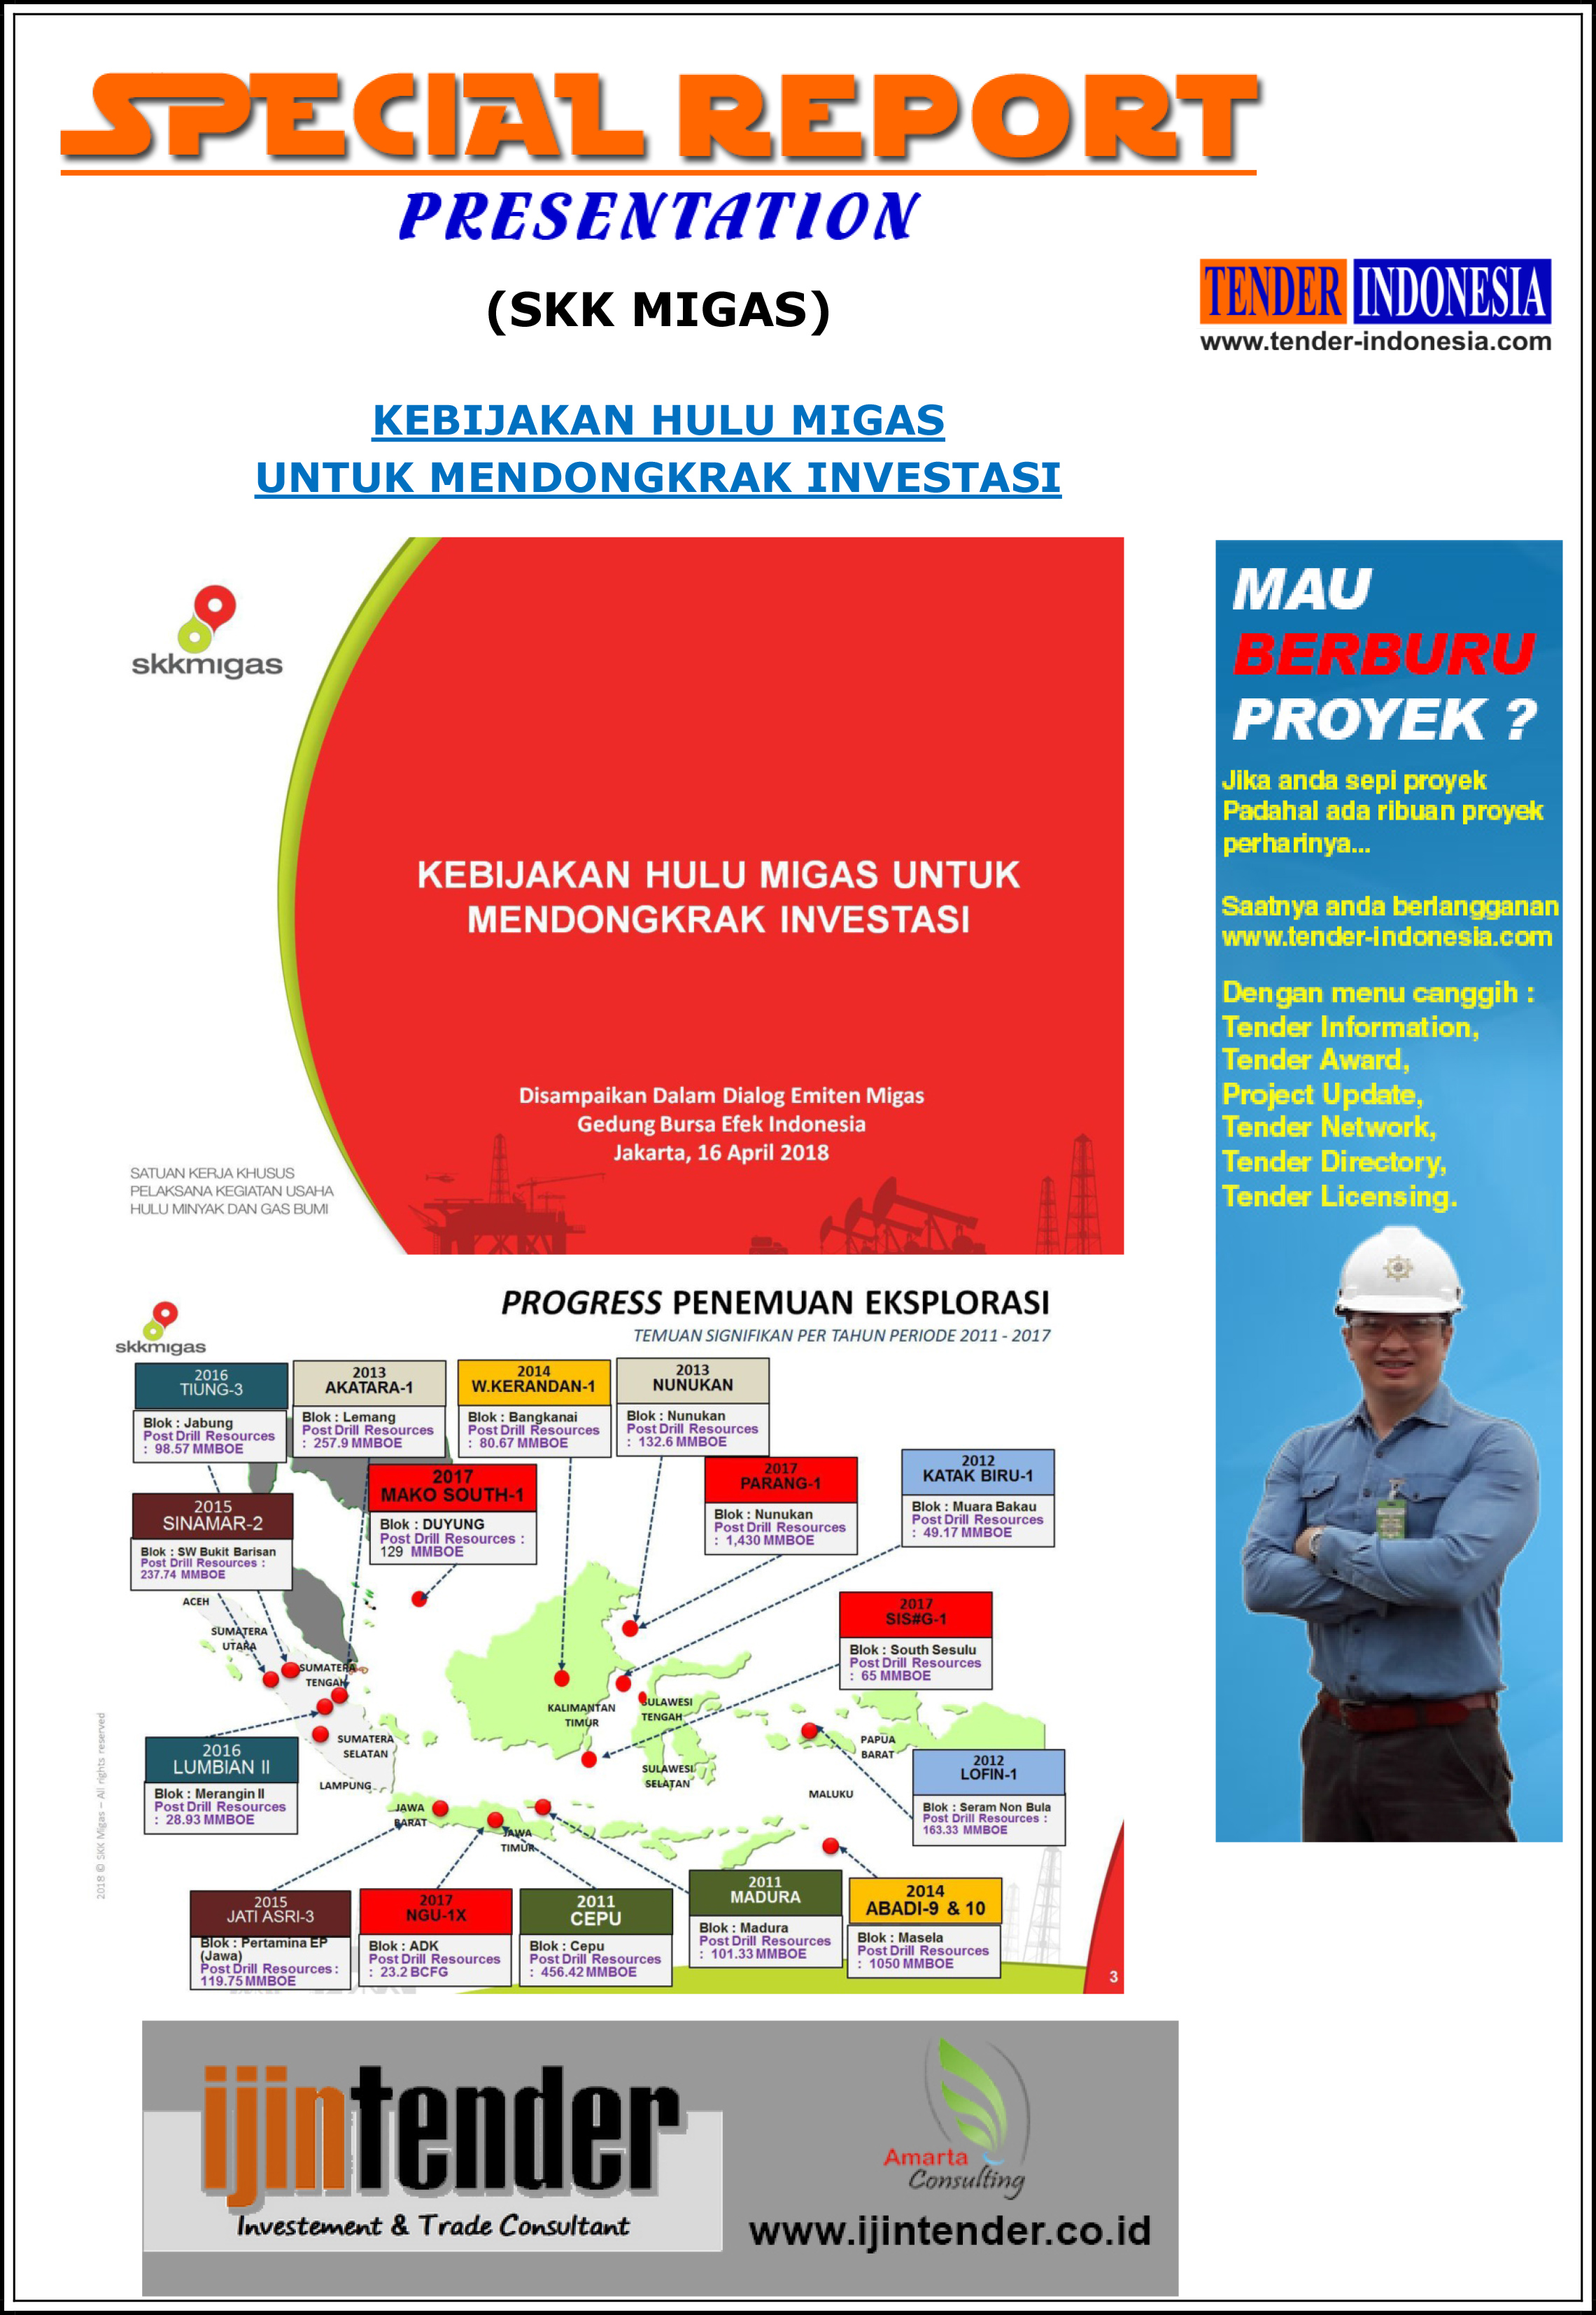 SPECIAL REPORT PRESENTATION INDONESIA - Edisi 14 Mei 2018 dari SKK MIGAS